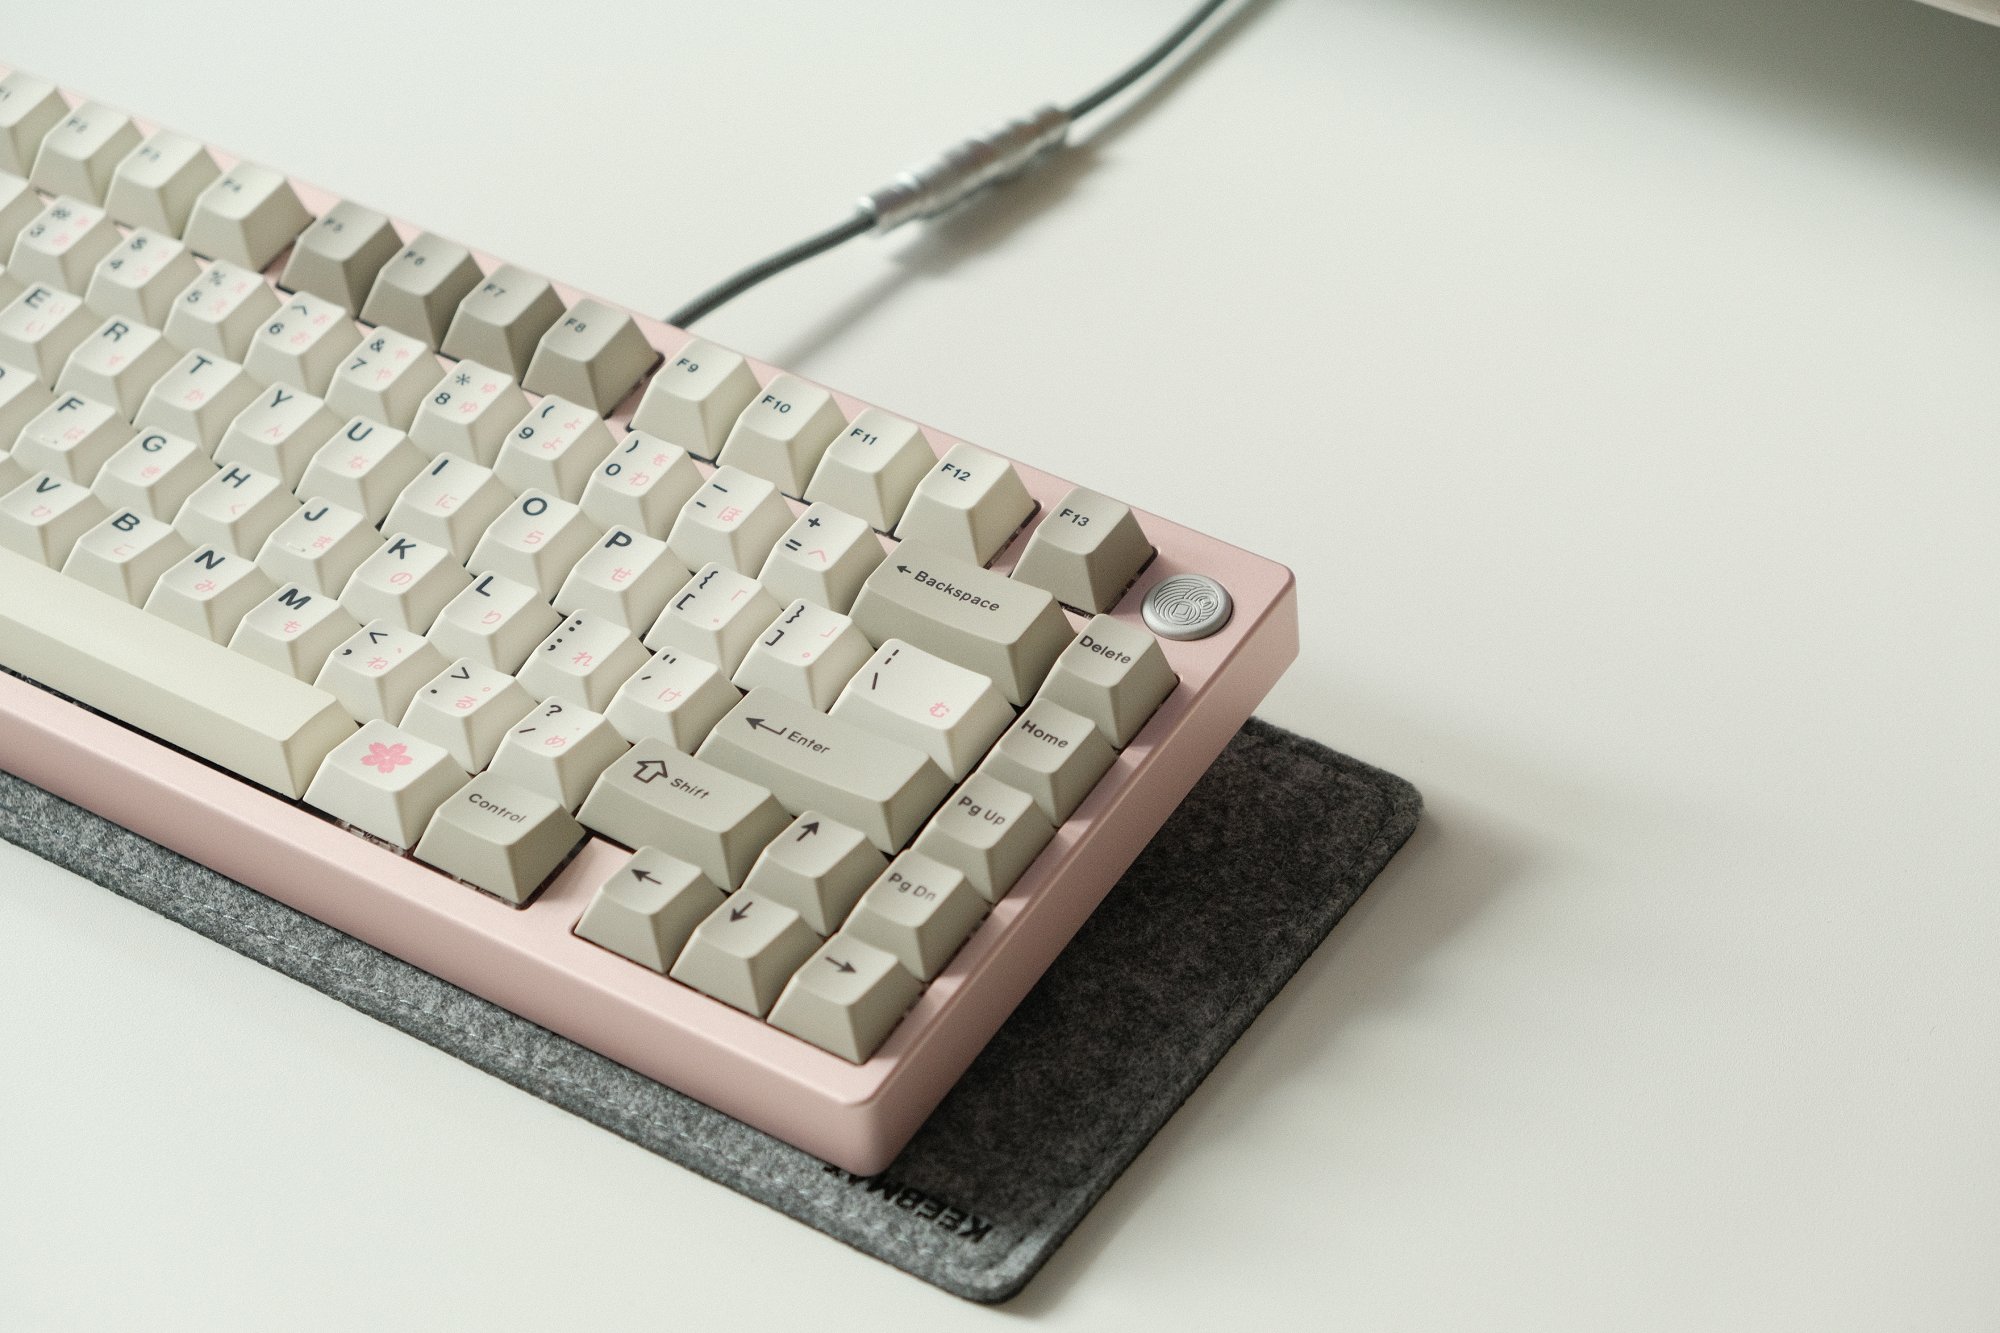 A custom mechanical MONOKEI x TGR keyboard sitting on a Keebmat desk mat